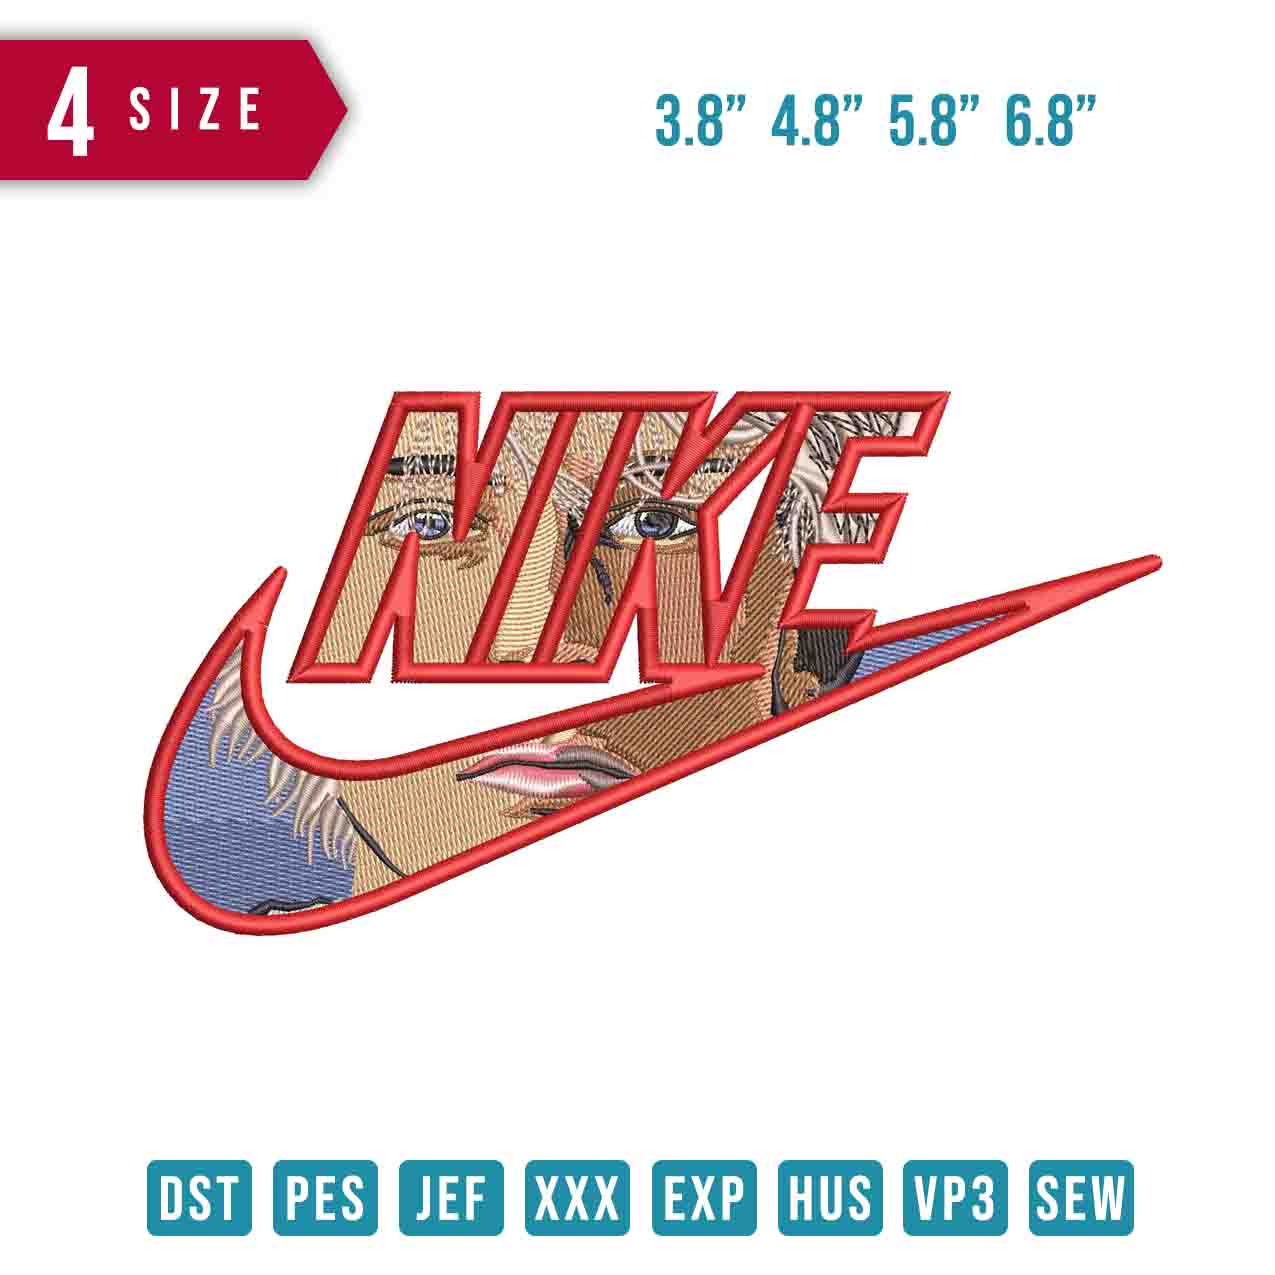 Nike MGK